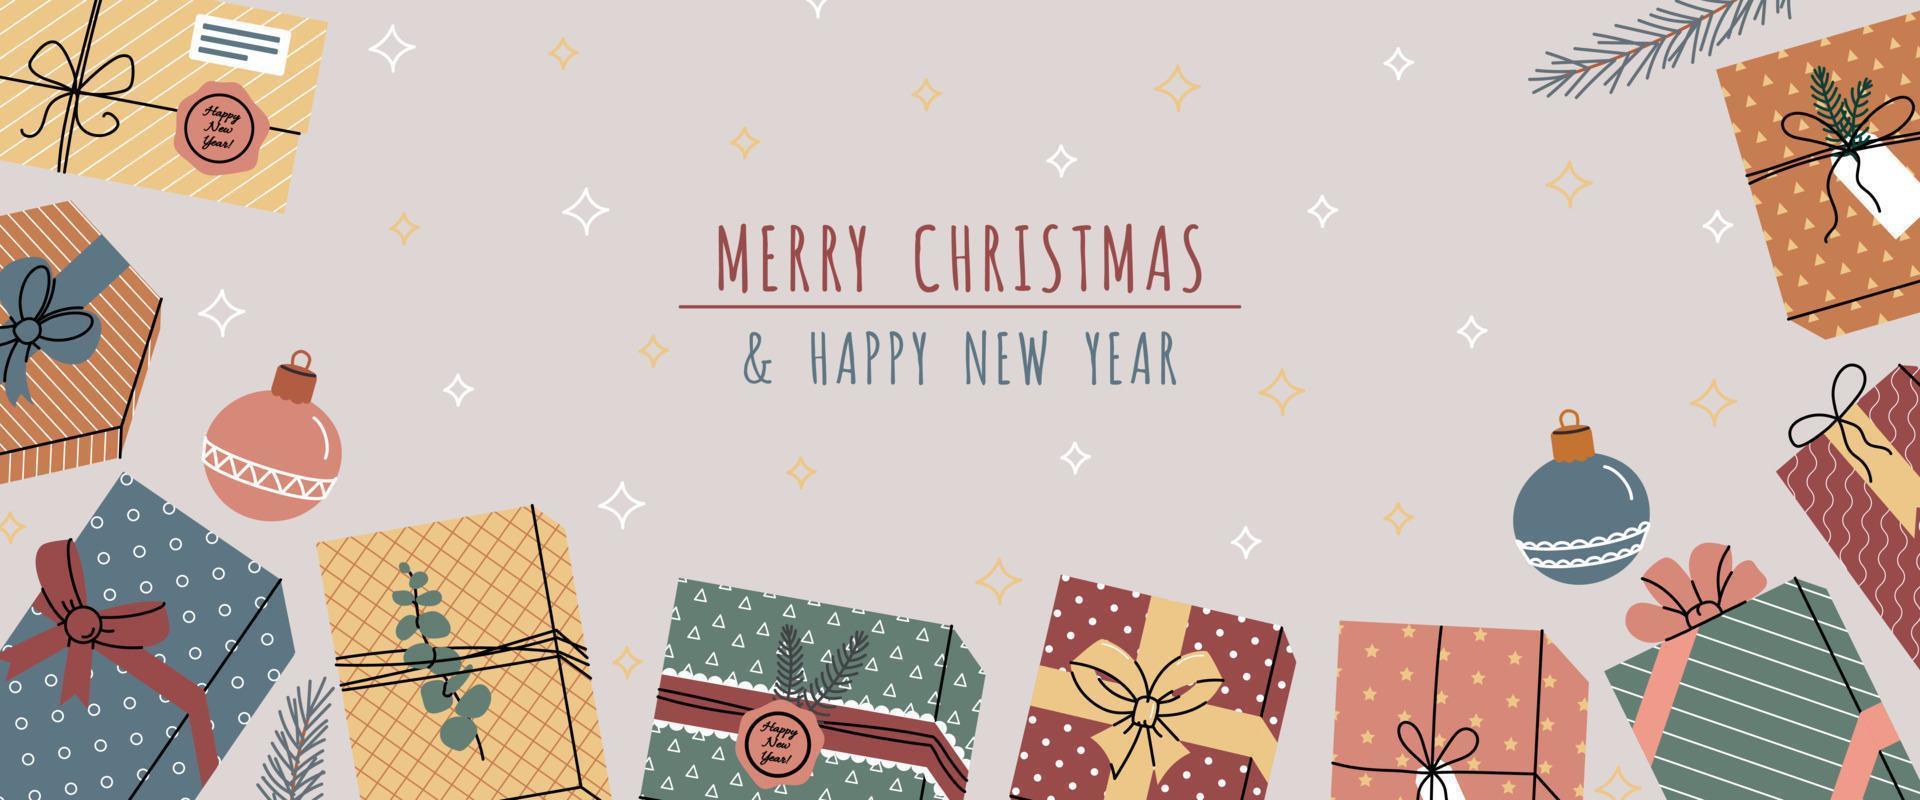 banner escandinavo de navidad con regalos. banner de navidad con cajas de regalo, bola de navidad, pino verde, estrellas vector